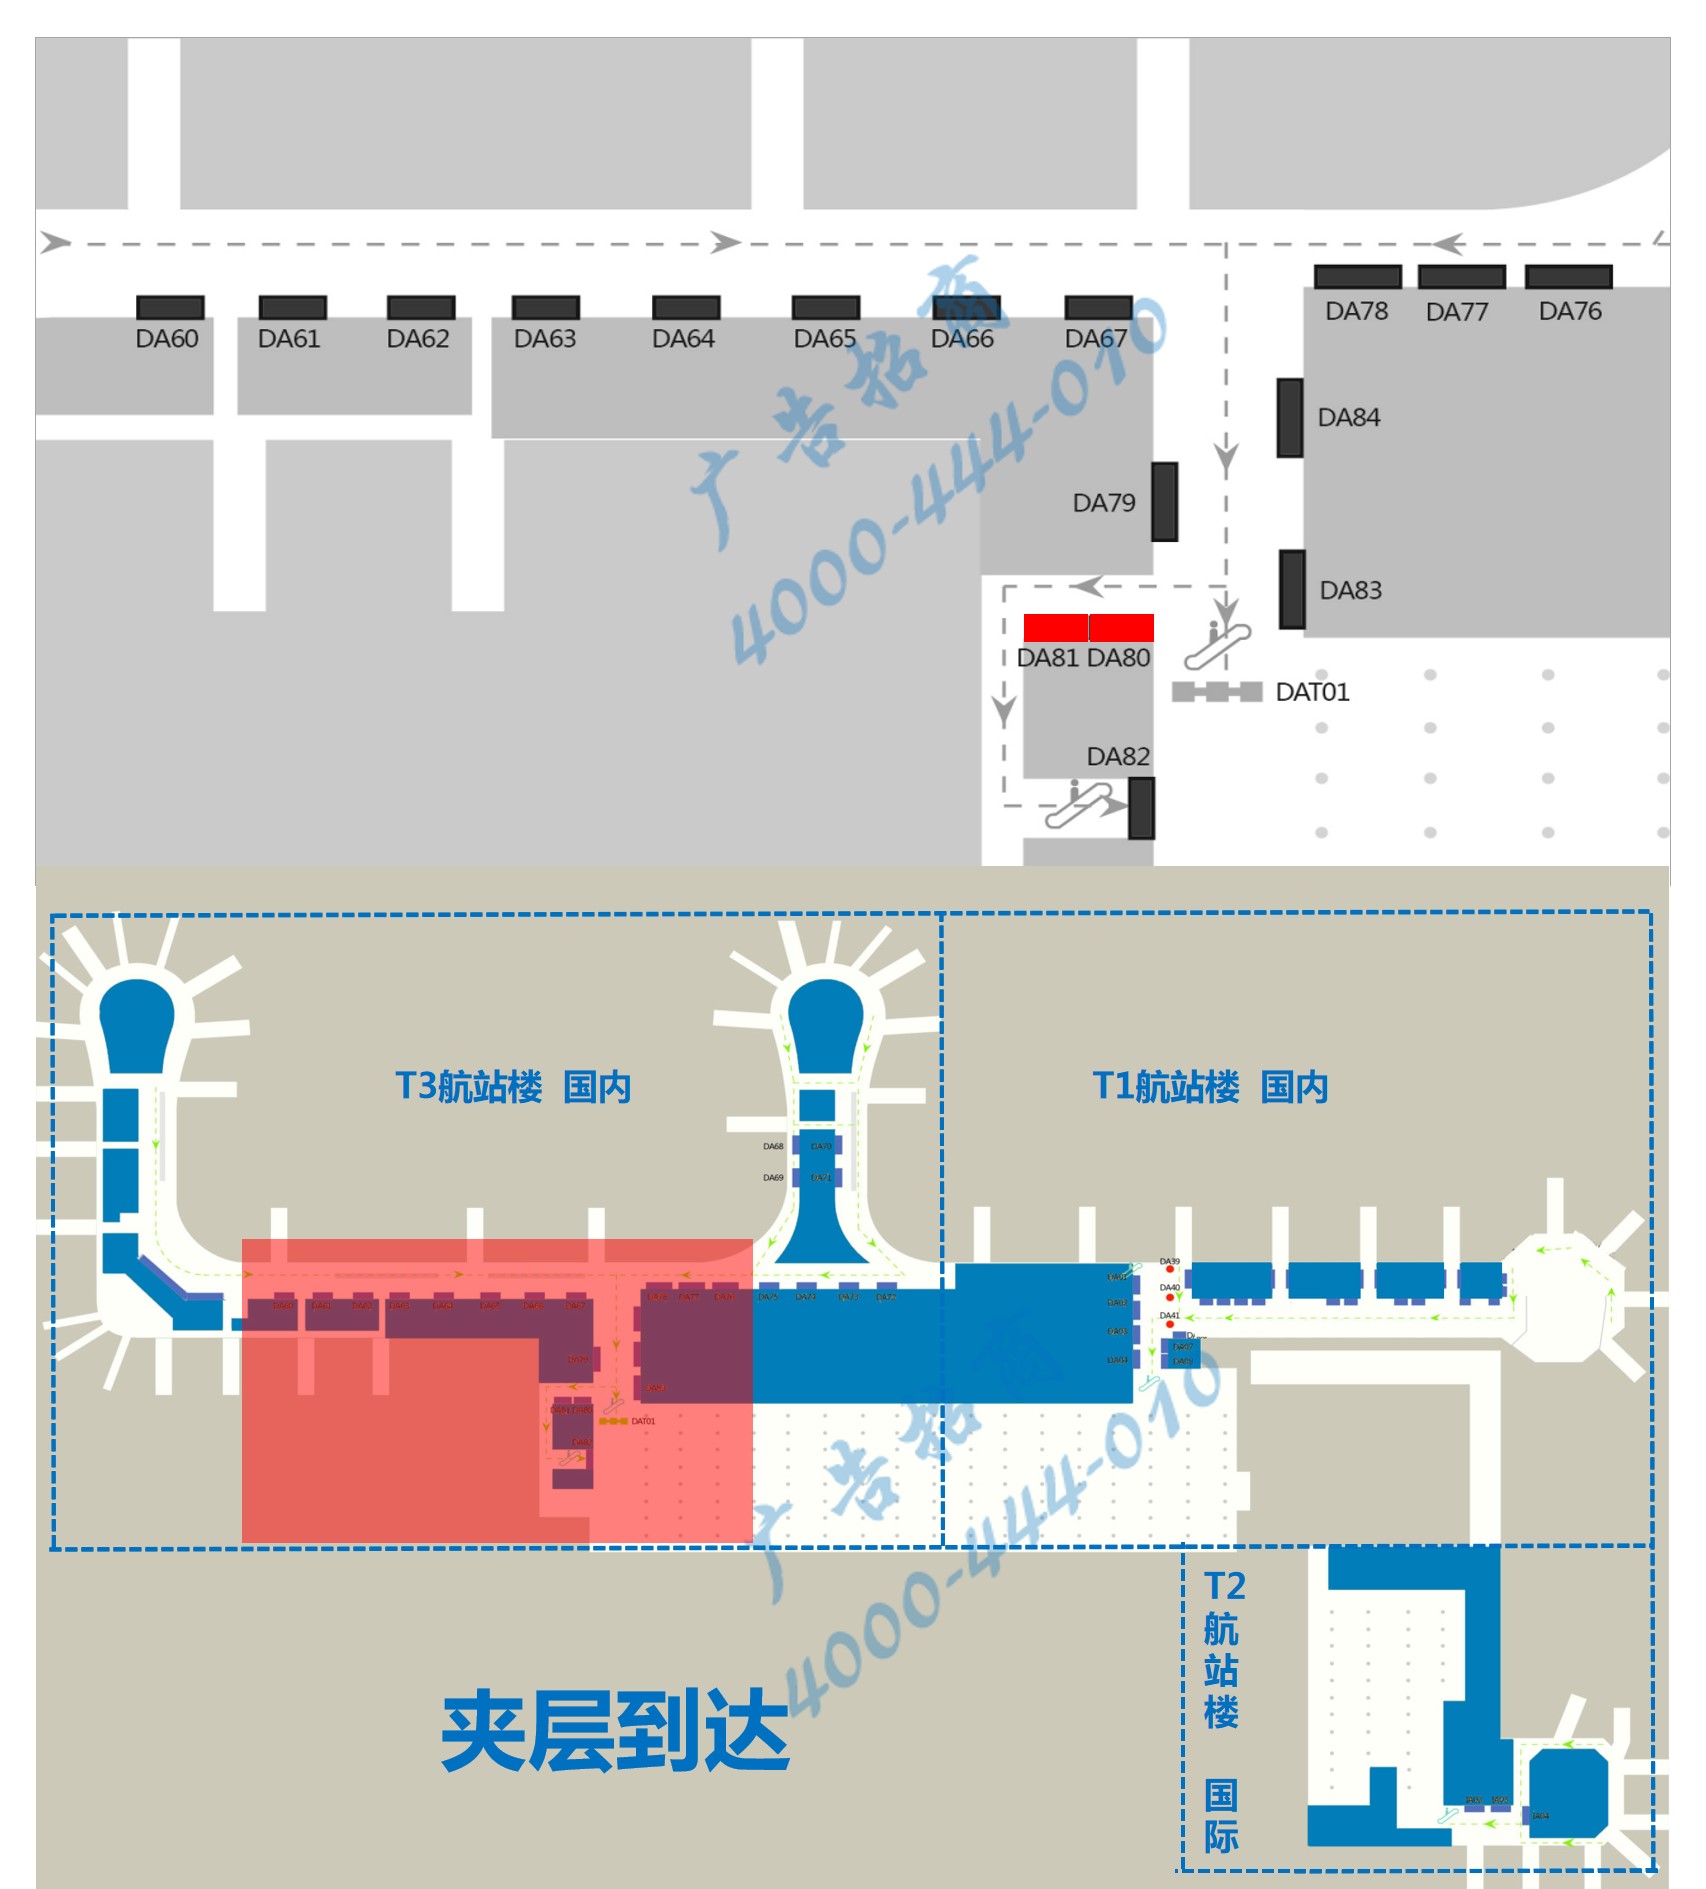 杭州萧山机场广告-T3到达全覆盖灯箱DA80/81位置图